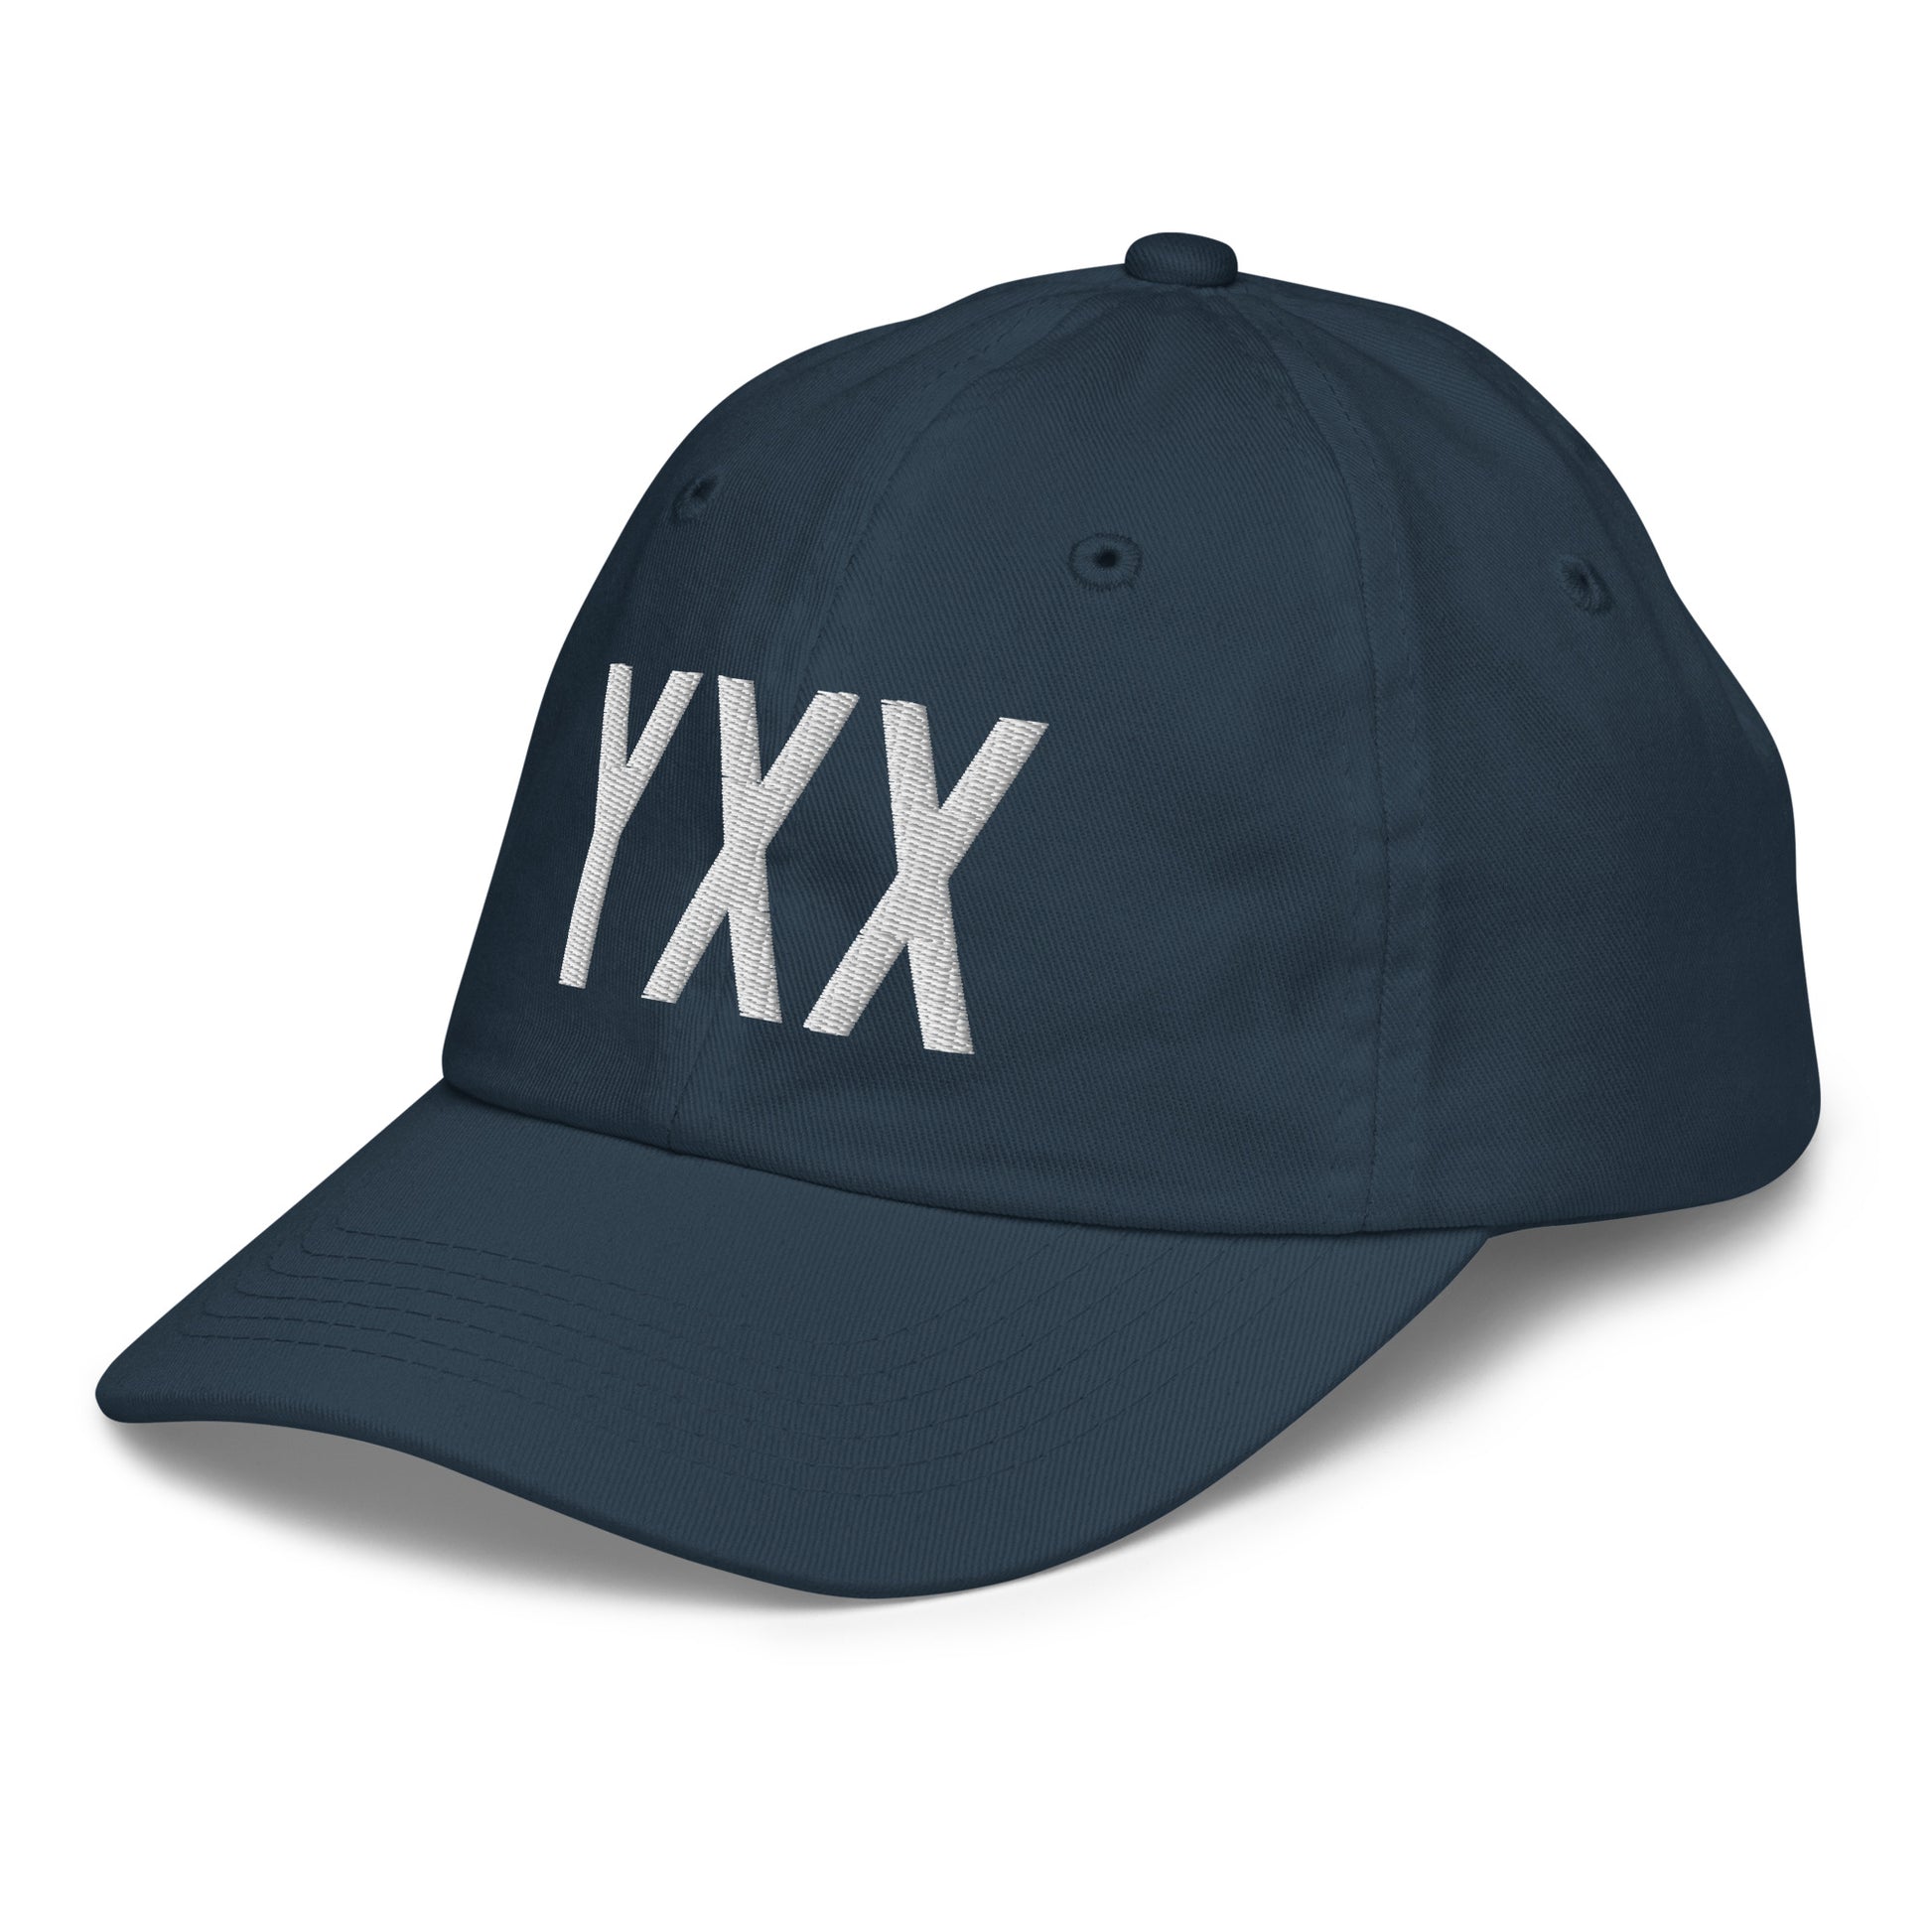 Airport Code Kid's Baseball Cap - White • YXX Abbotsford • YHM Designs - Image 16